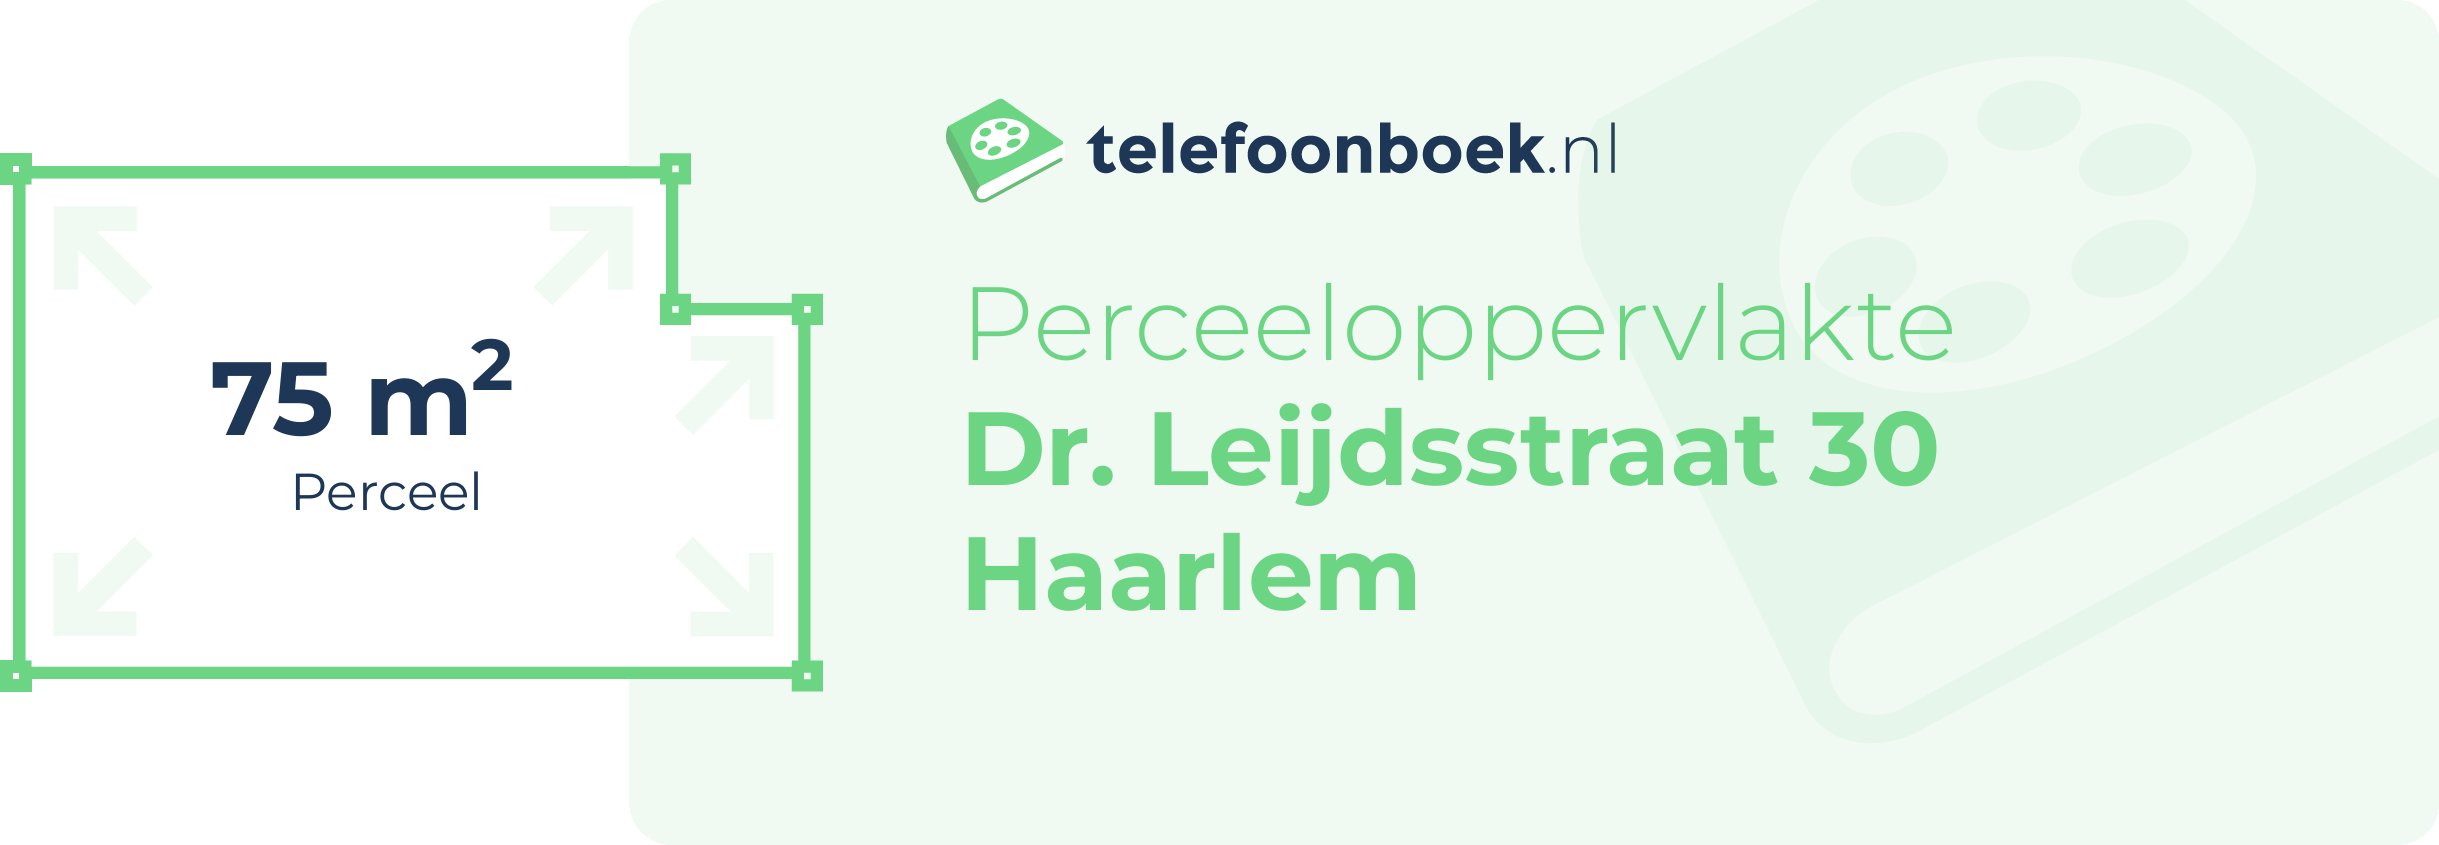 Perceeloppervlakte Dr. Leijdsstraat 30 Haarlem